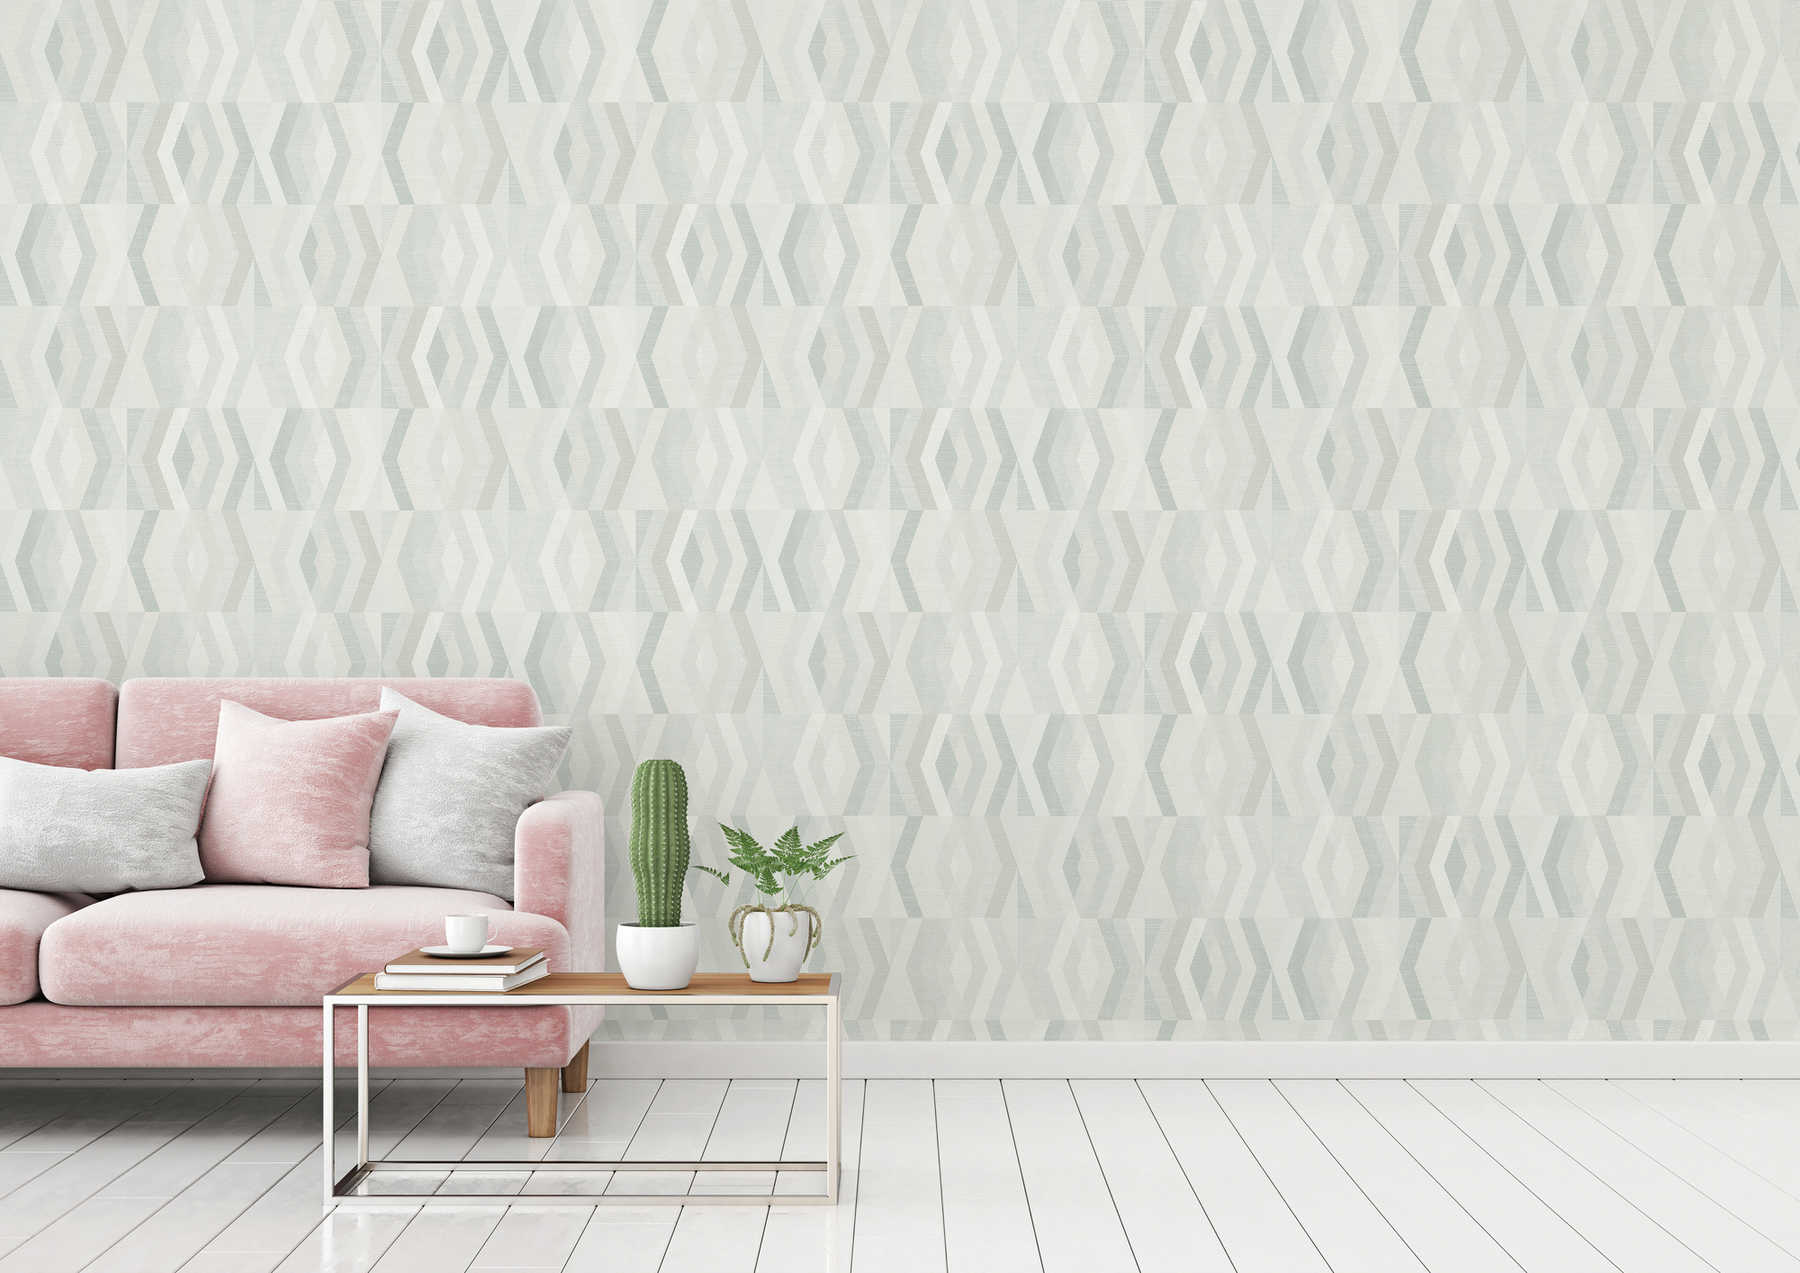             Wallpaper Scandinavian style with geometric pattern - grey, beige
        